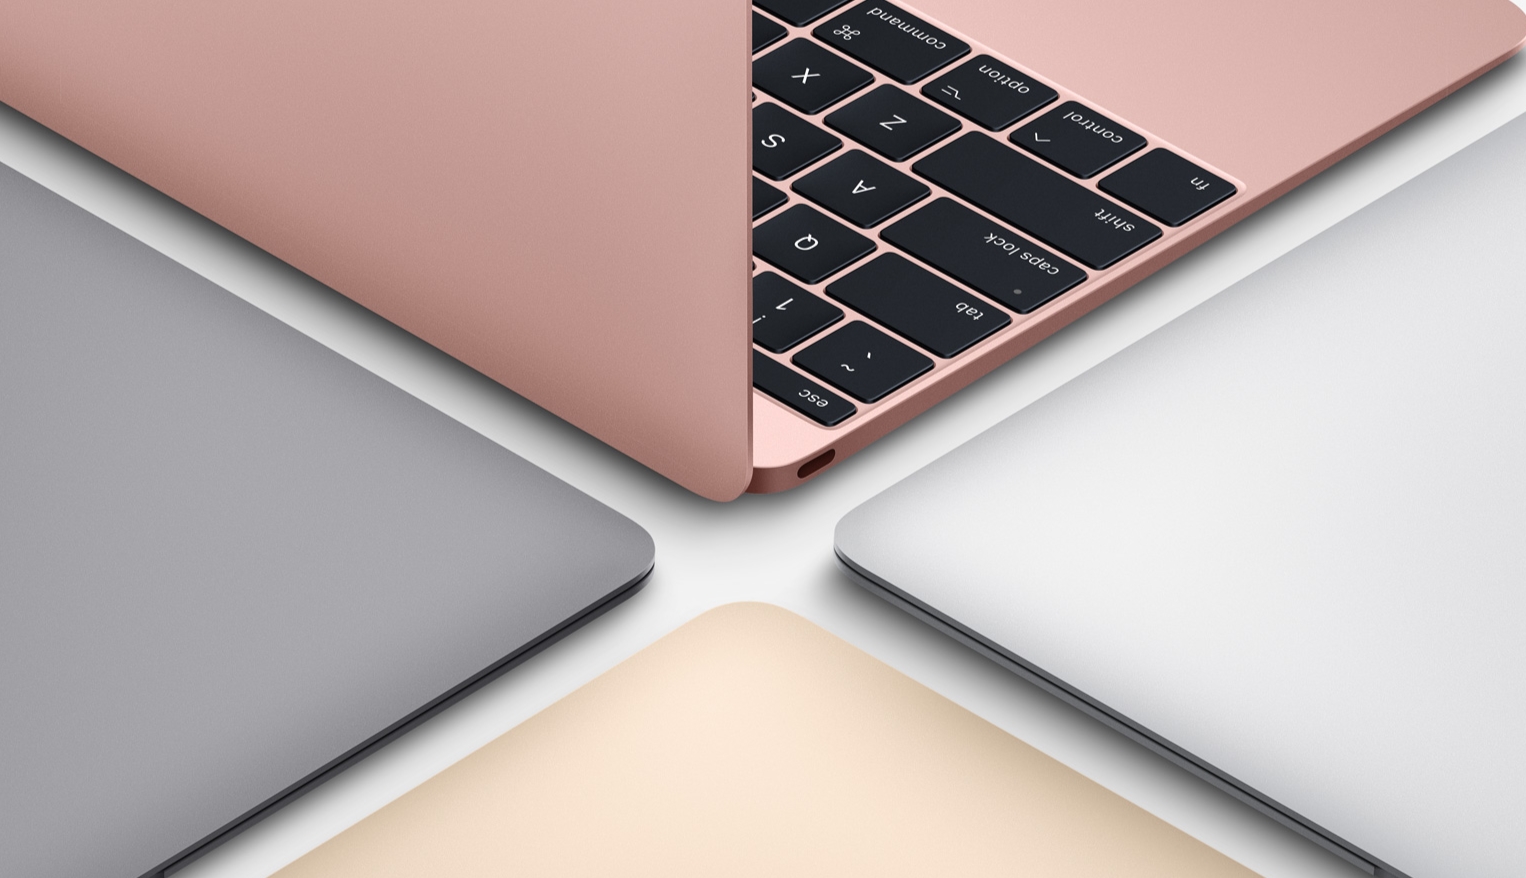 12インチ MacBook 2017が気になる。最近の苦悩